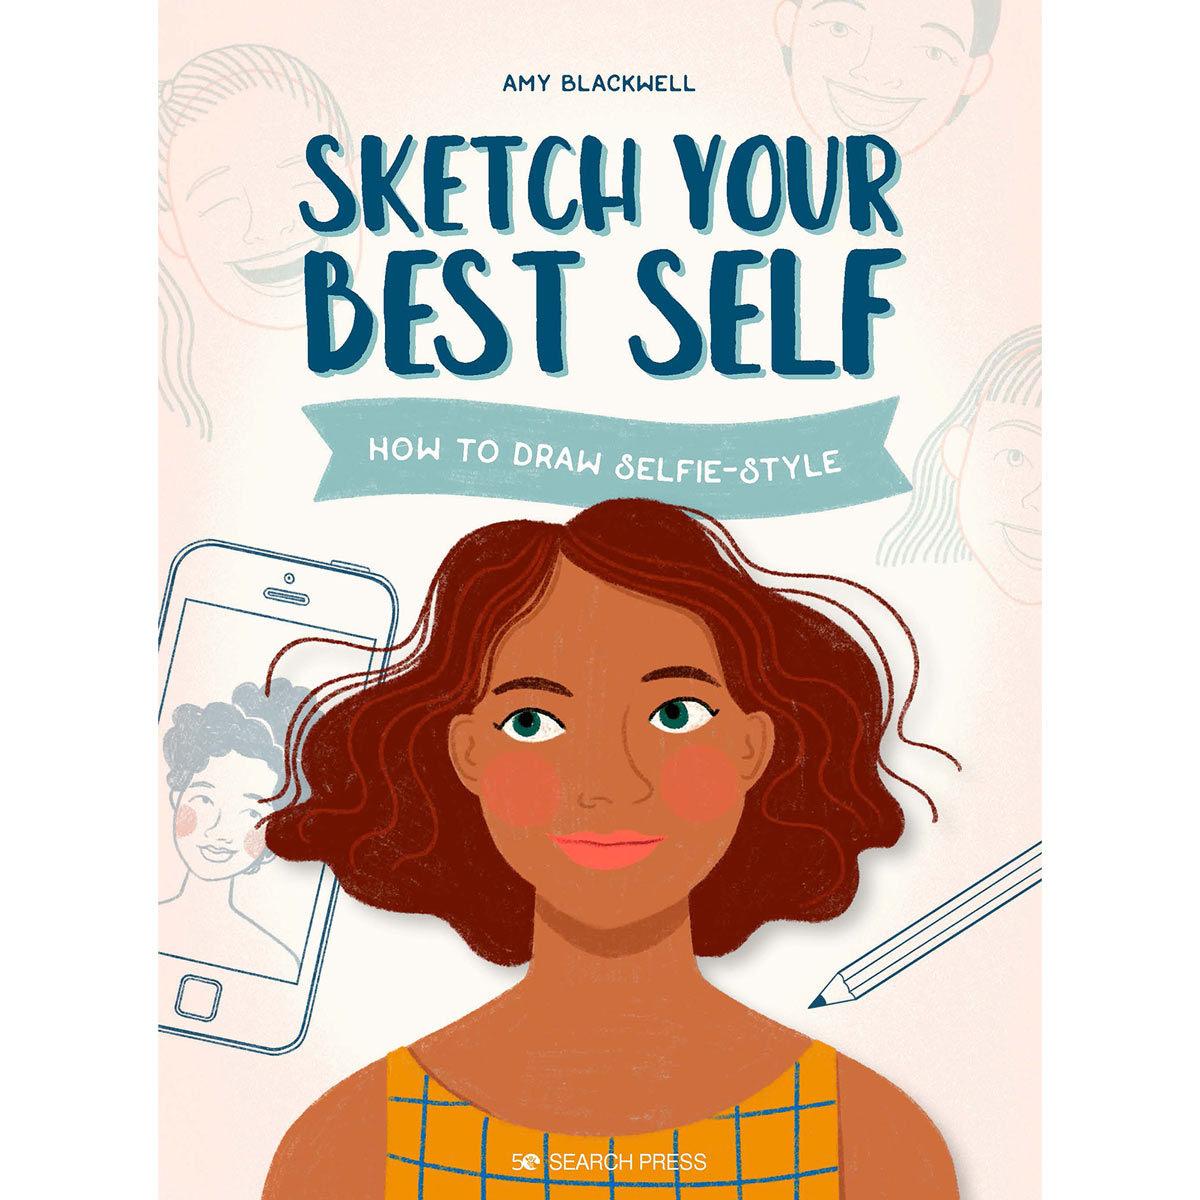 Rechercher dans les livres de presse - Sketch Your Best Self- Comment dessiner un style Selfie